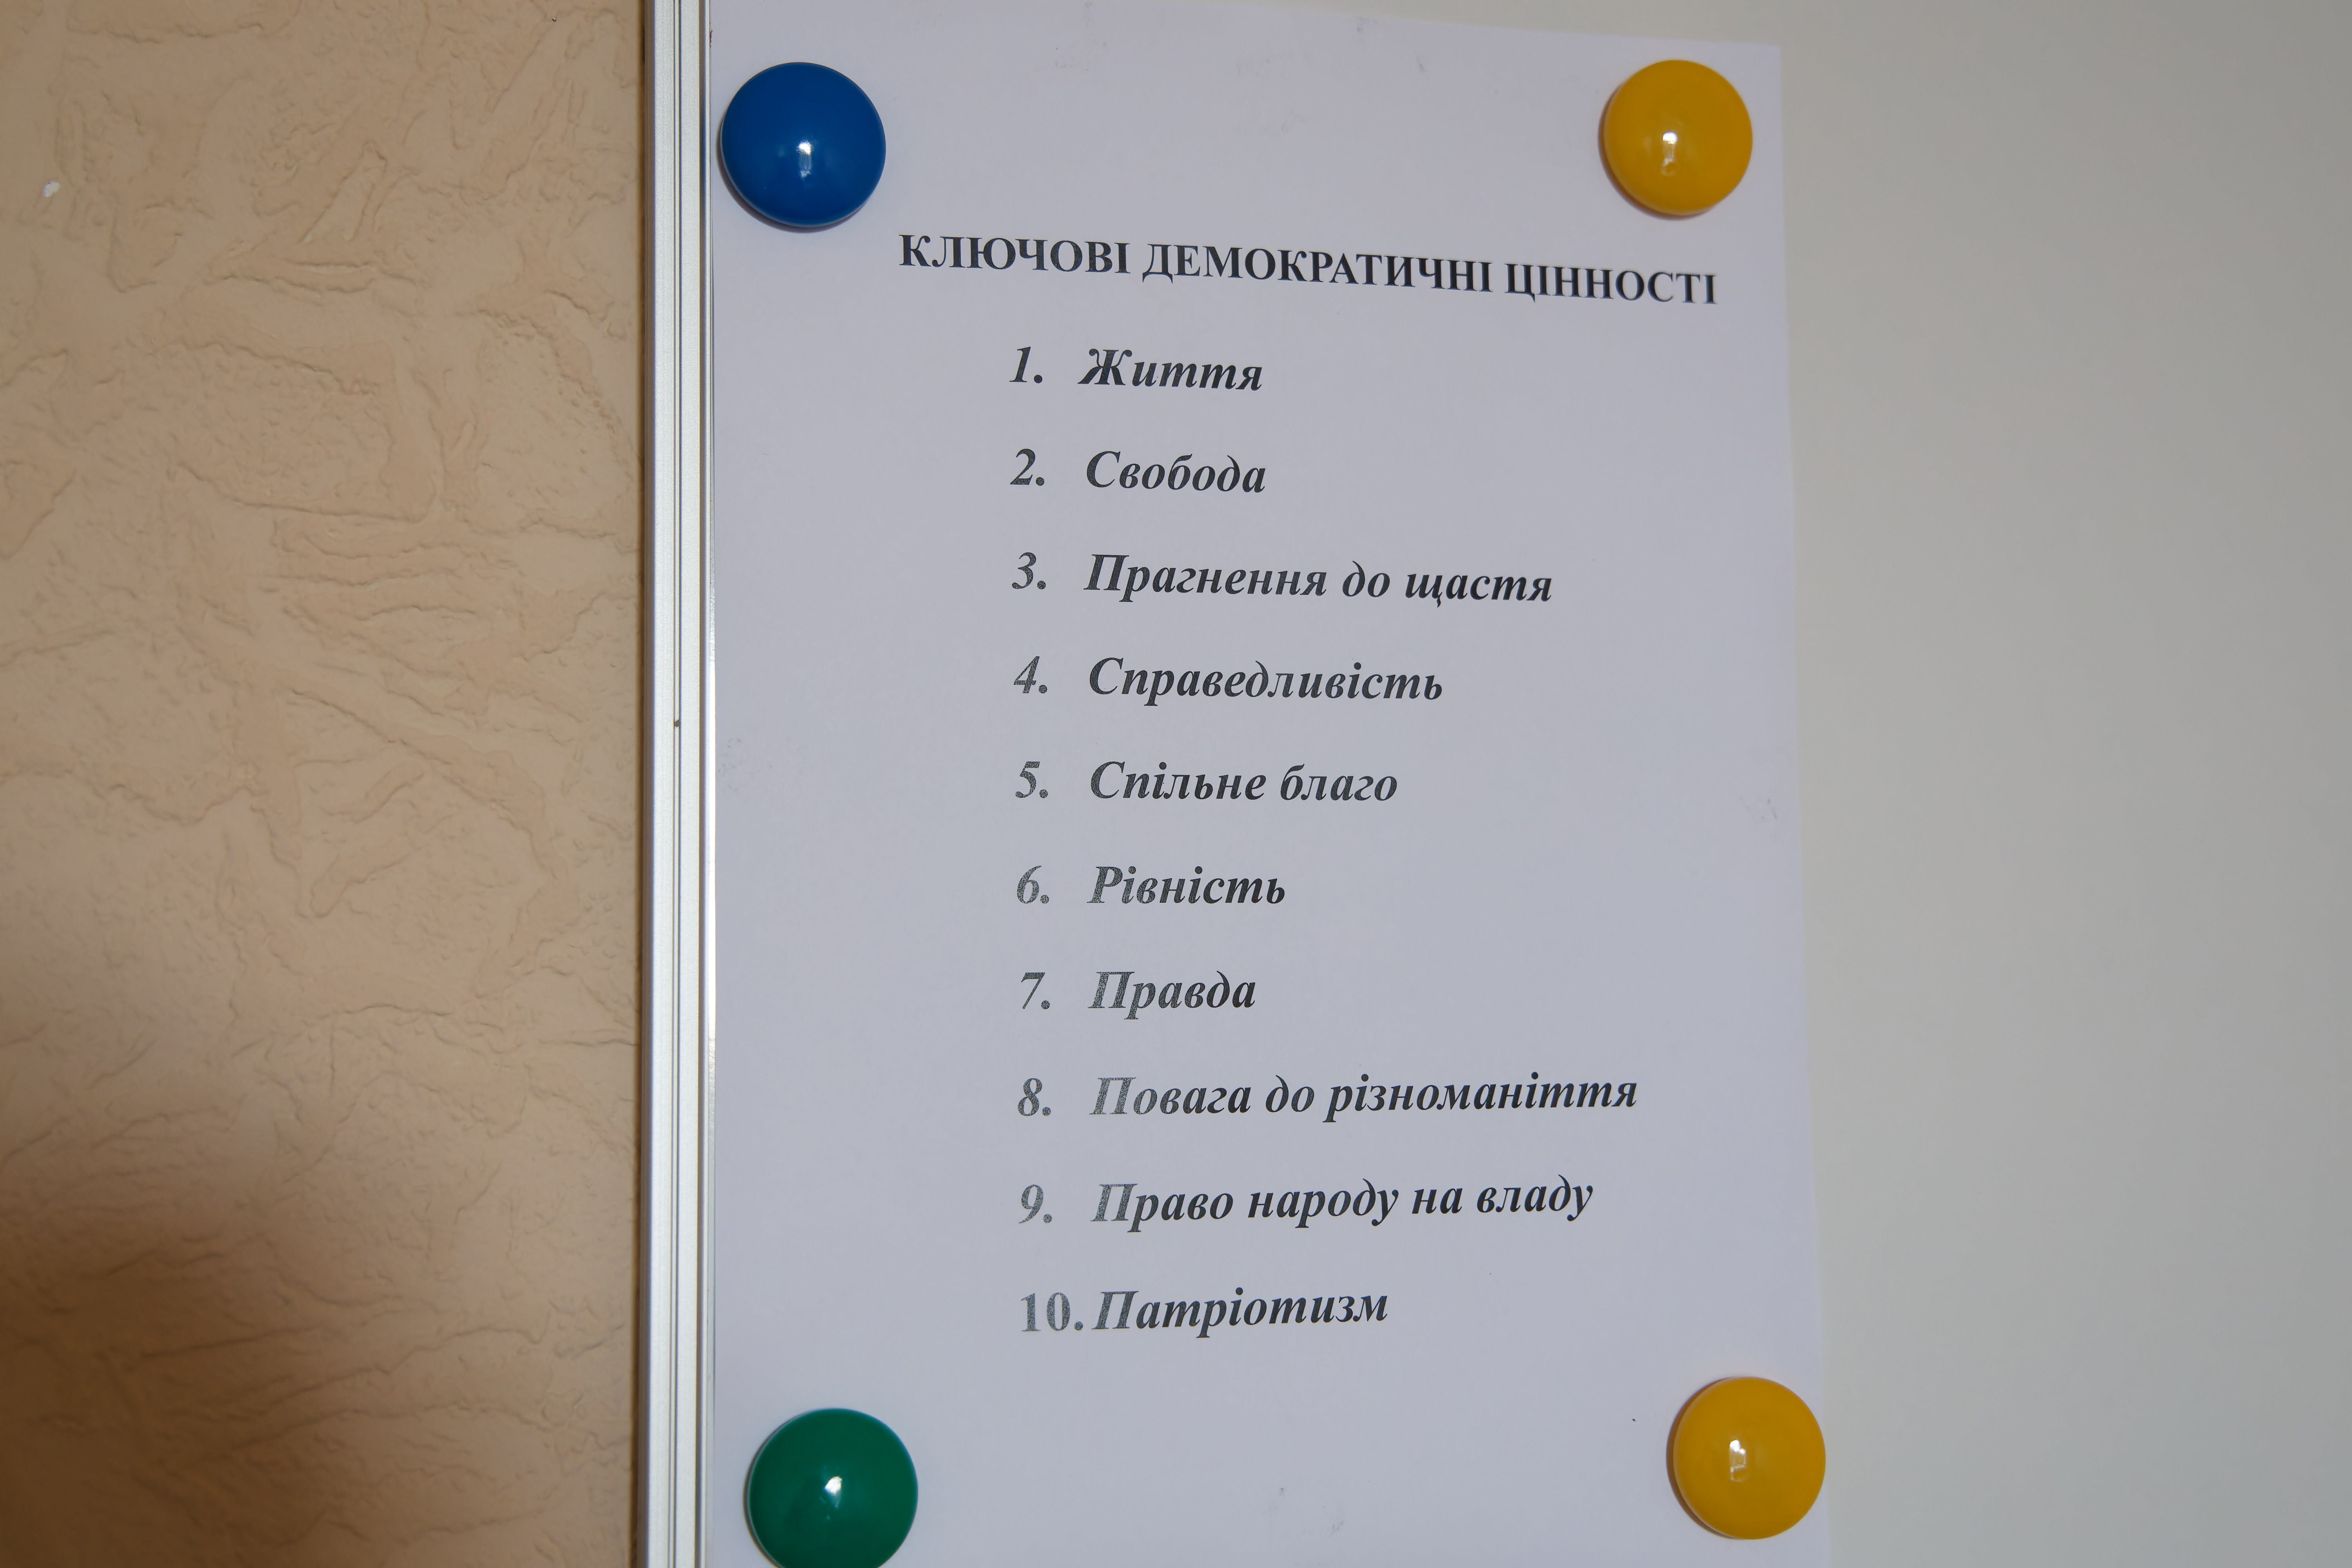 У кабінеті Павленка на видному місці висить табличка з демократичними цінностями, про які він нагадує підлеглим